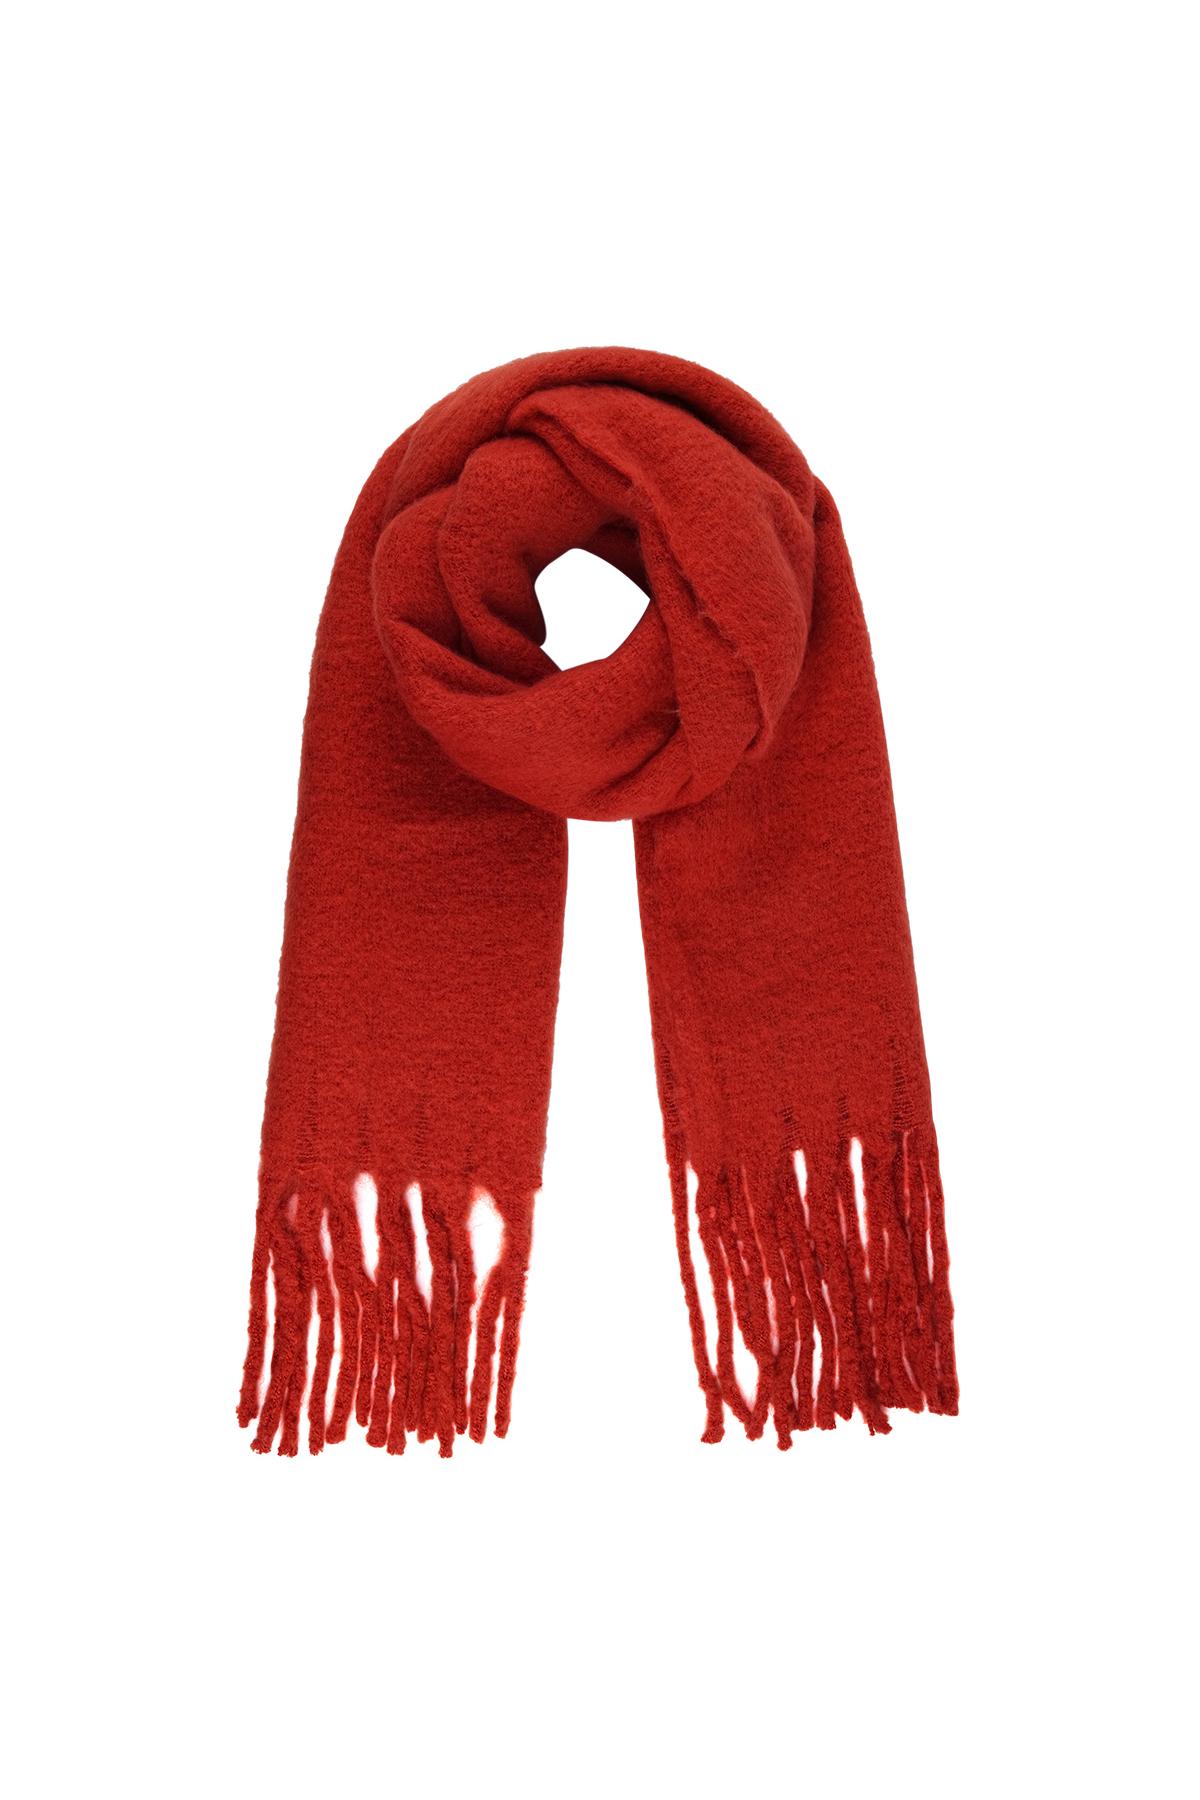 Warme wintersjaal effen kleur rood Polyester 